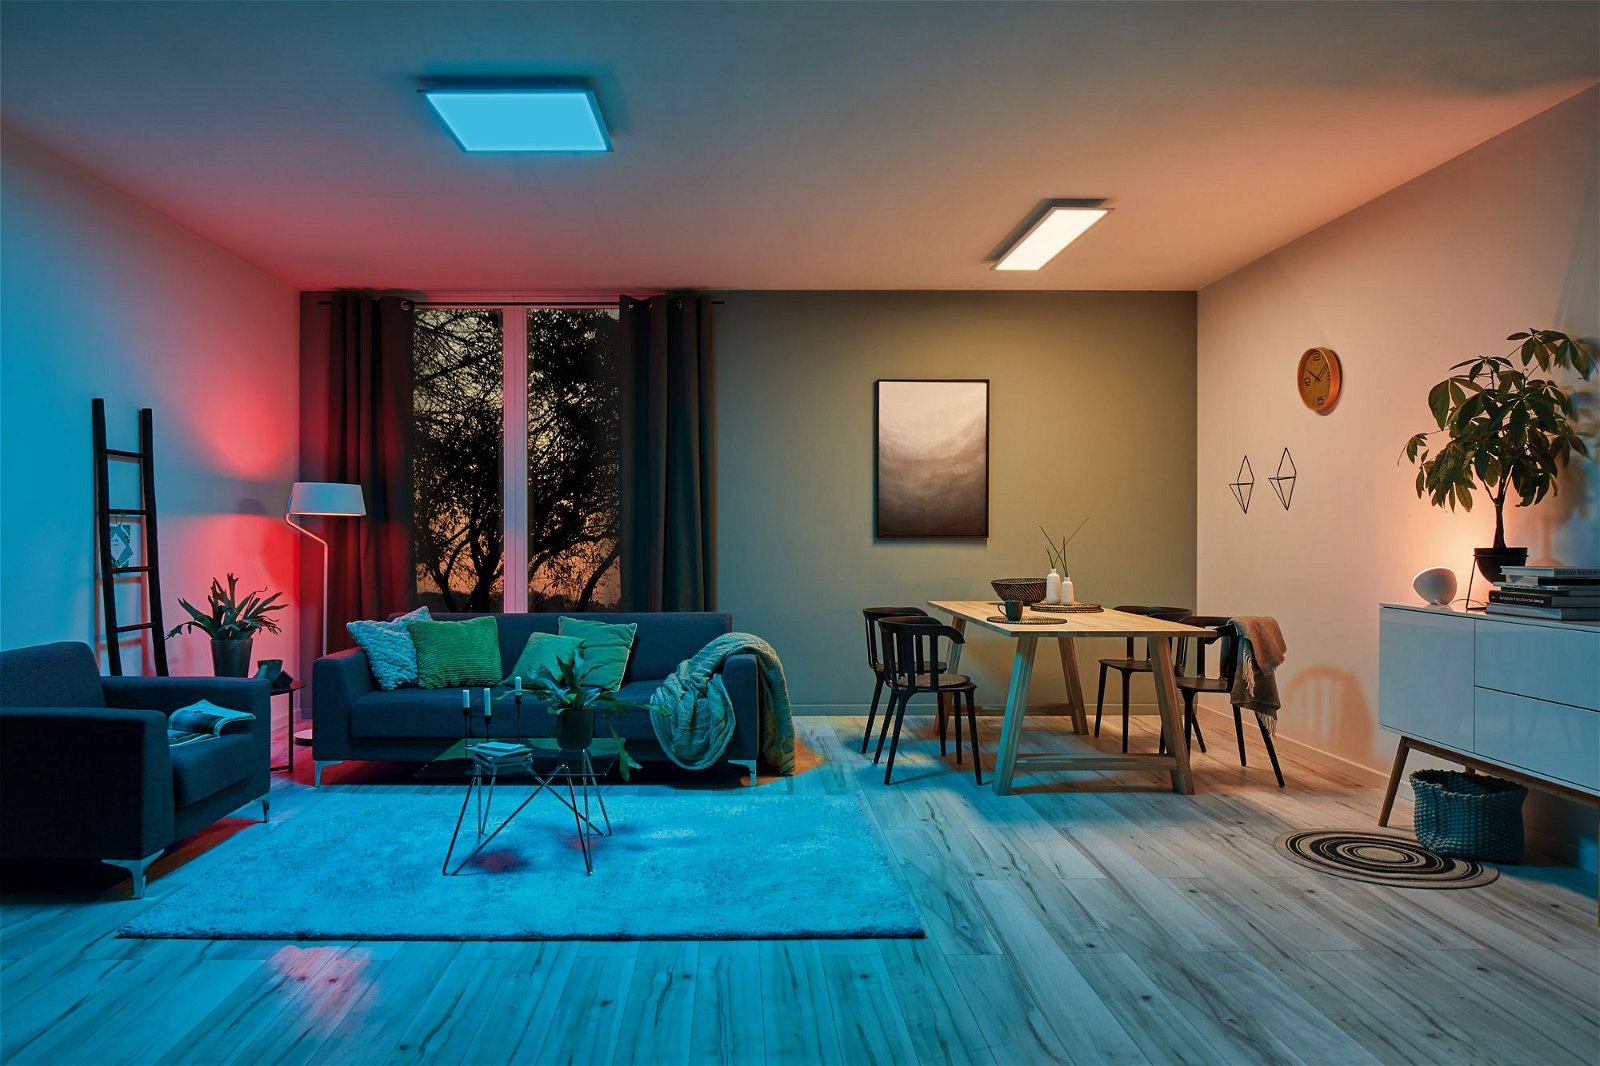 LED-paneel Smart Home Zigbee Amaris hoekig 595x595mm RGBW Wit mat dimbaar